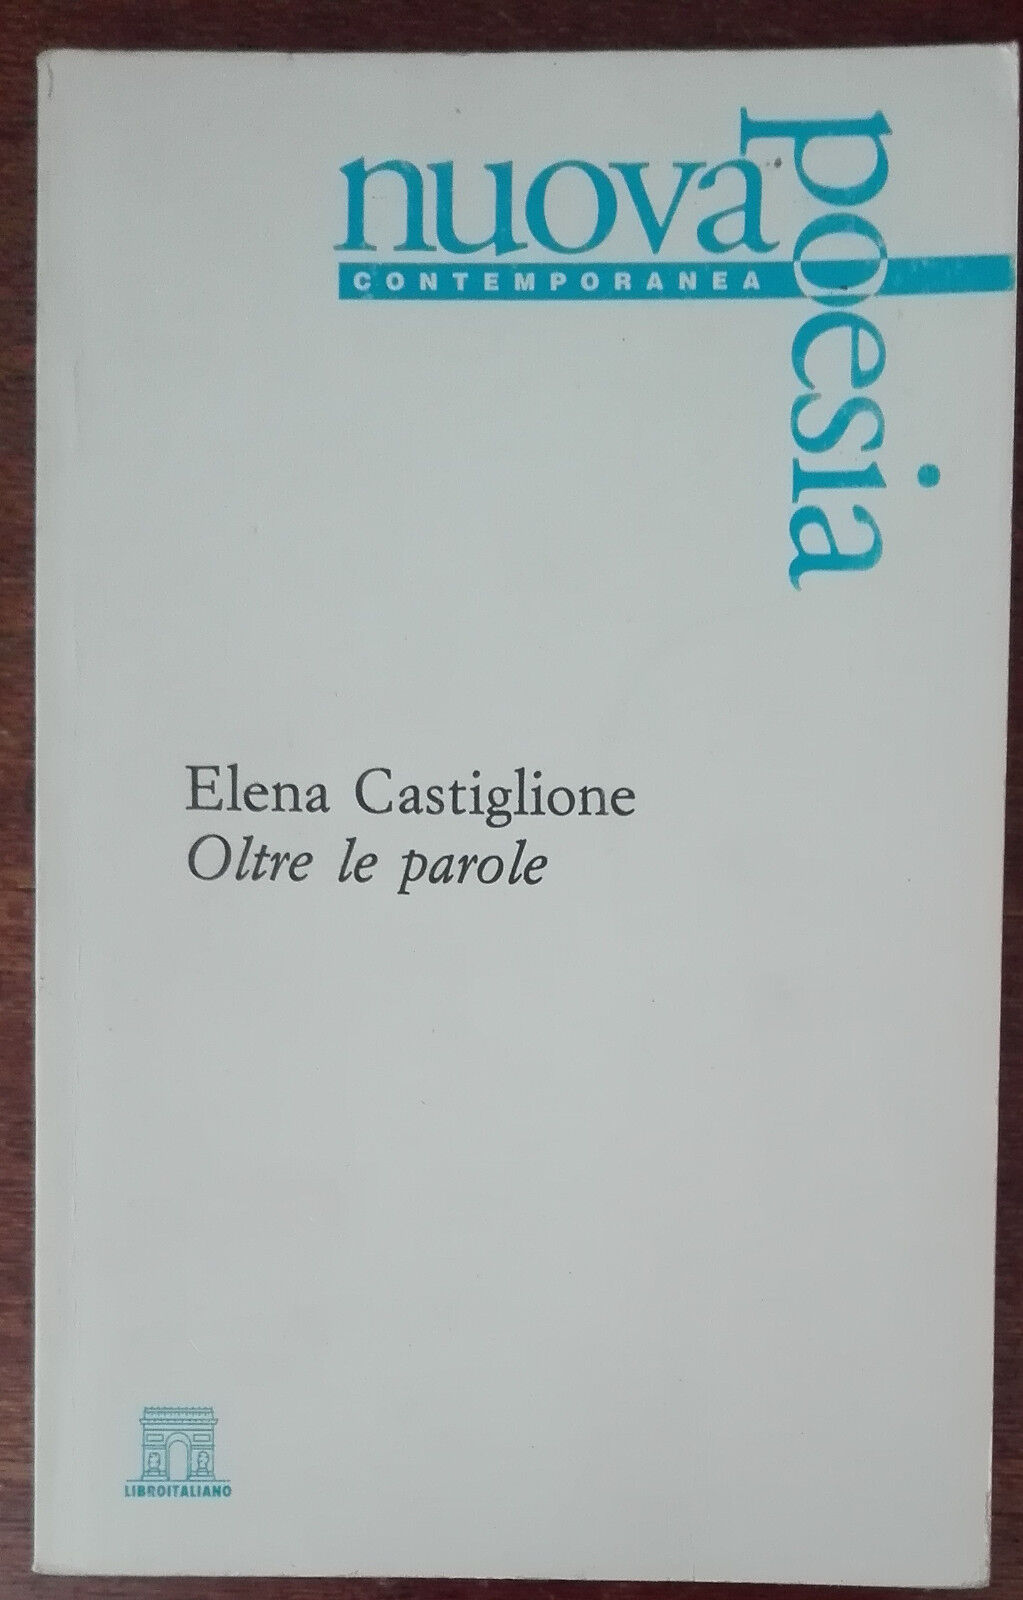 Oltre le parole - Elena Castiglione - Libroitaliano,1996 - A